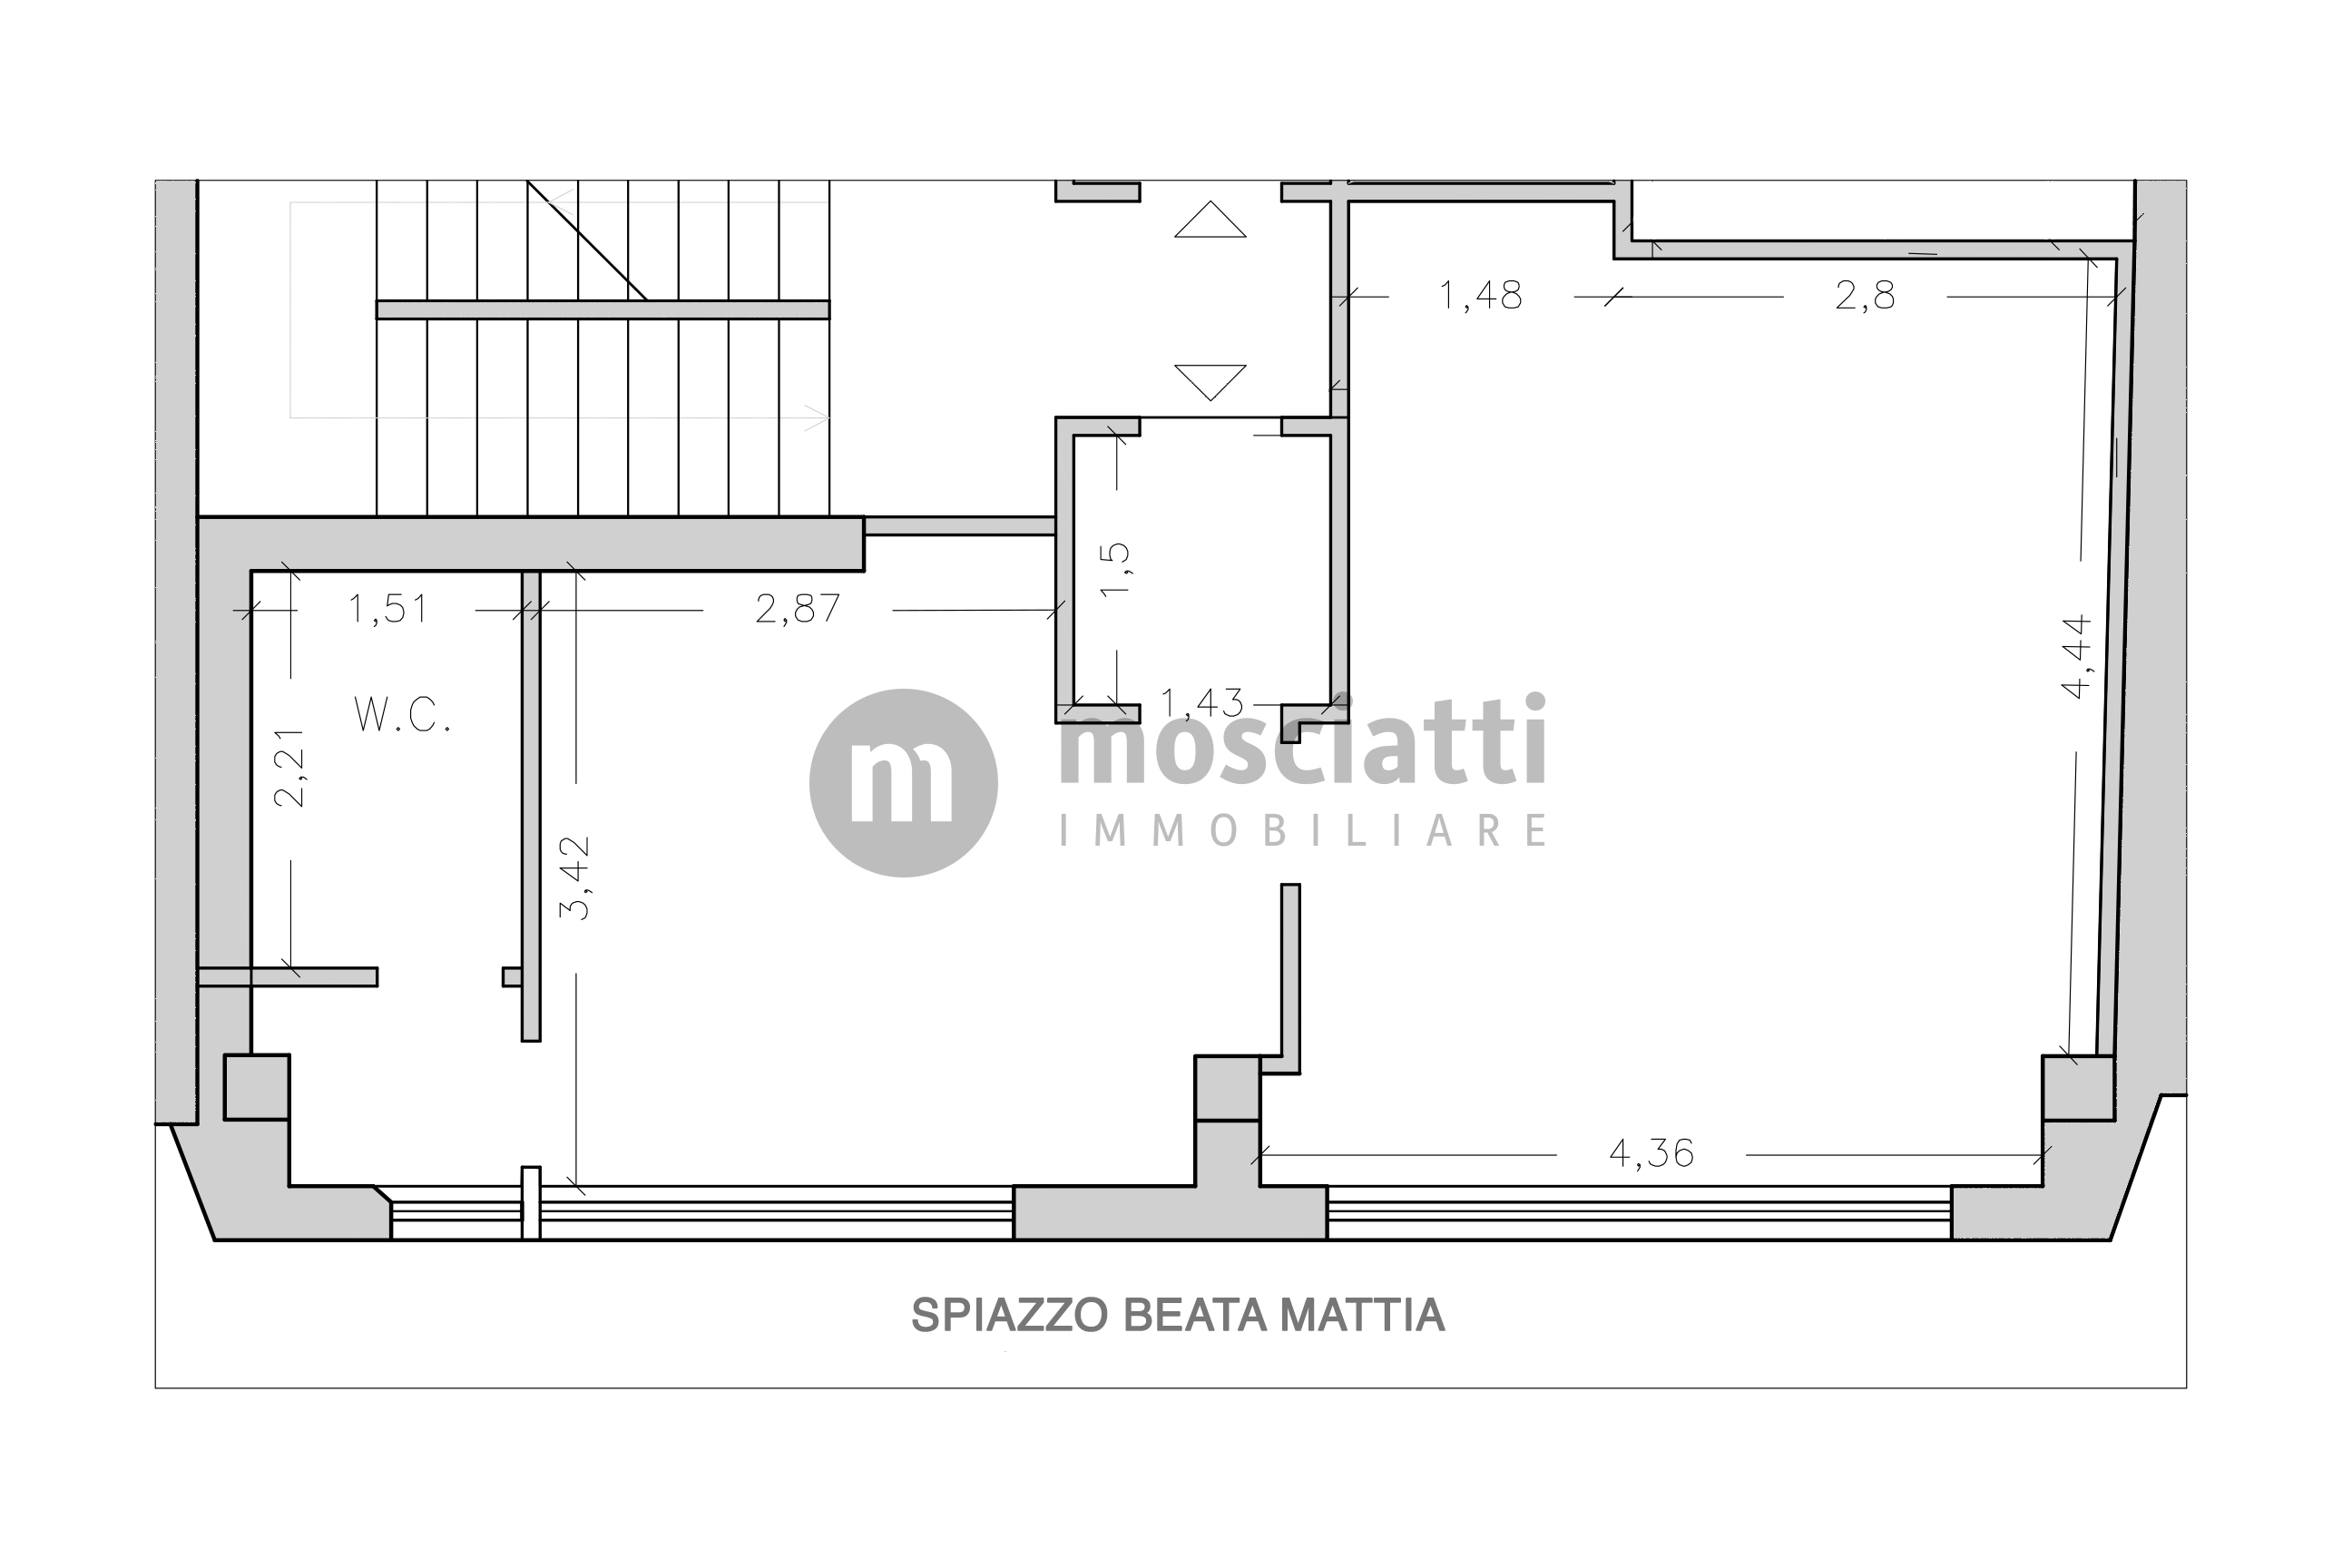 MATELICA, Spiazzo Beata Mattia, vendita APPARTAMENTO, centro storico cod - 1